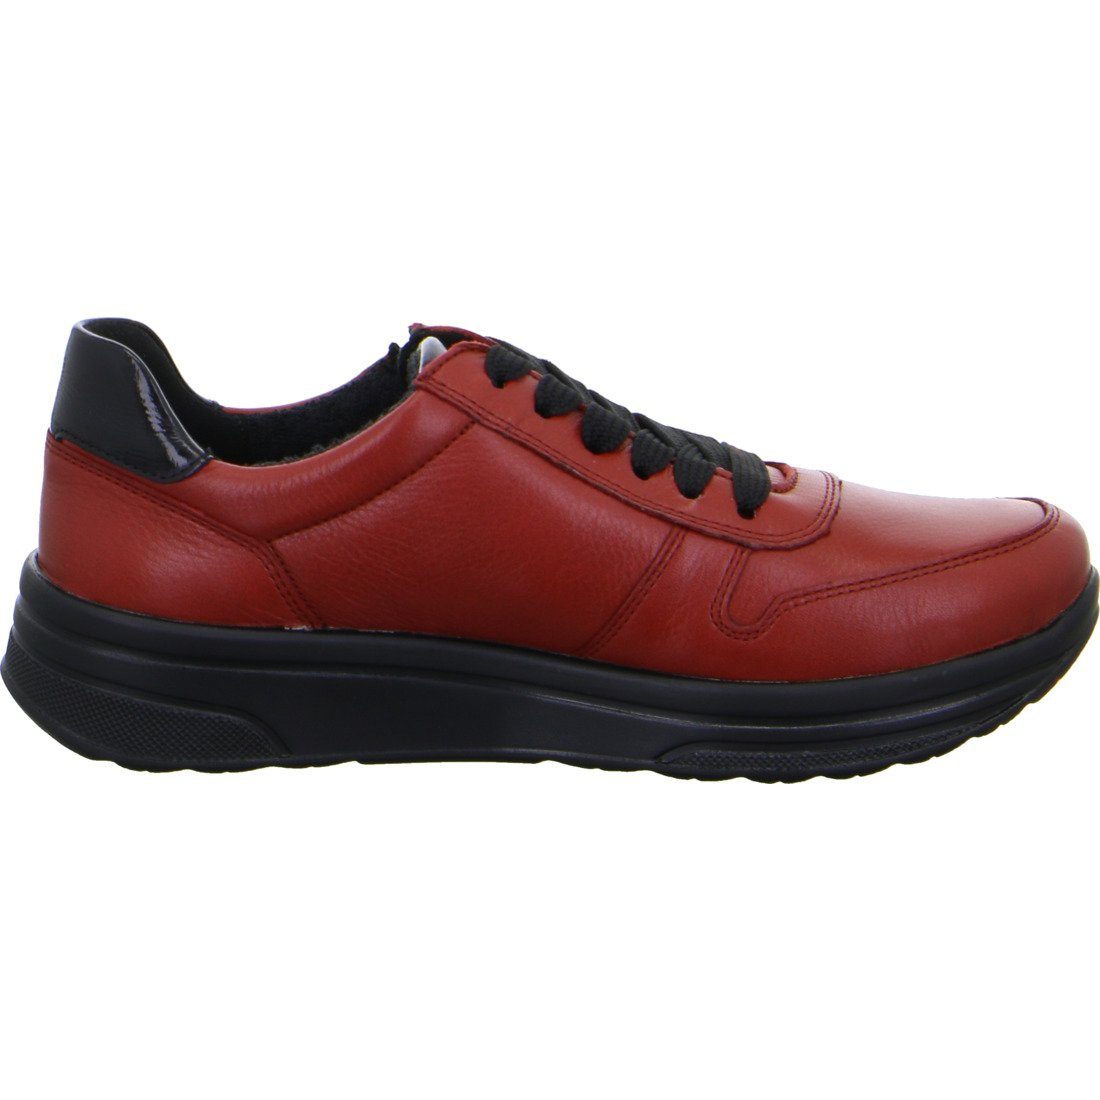 Sneaker Damen - Sapporo Ara Ara 049787 Sneaker Glattleder Schuhe, rot